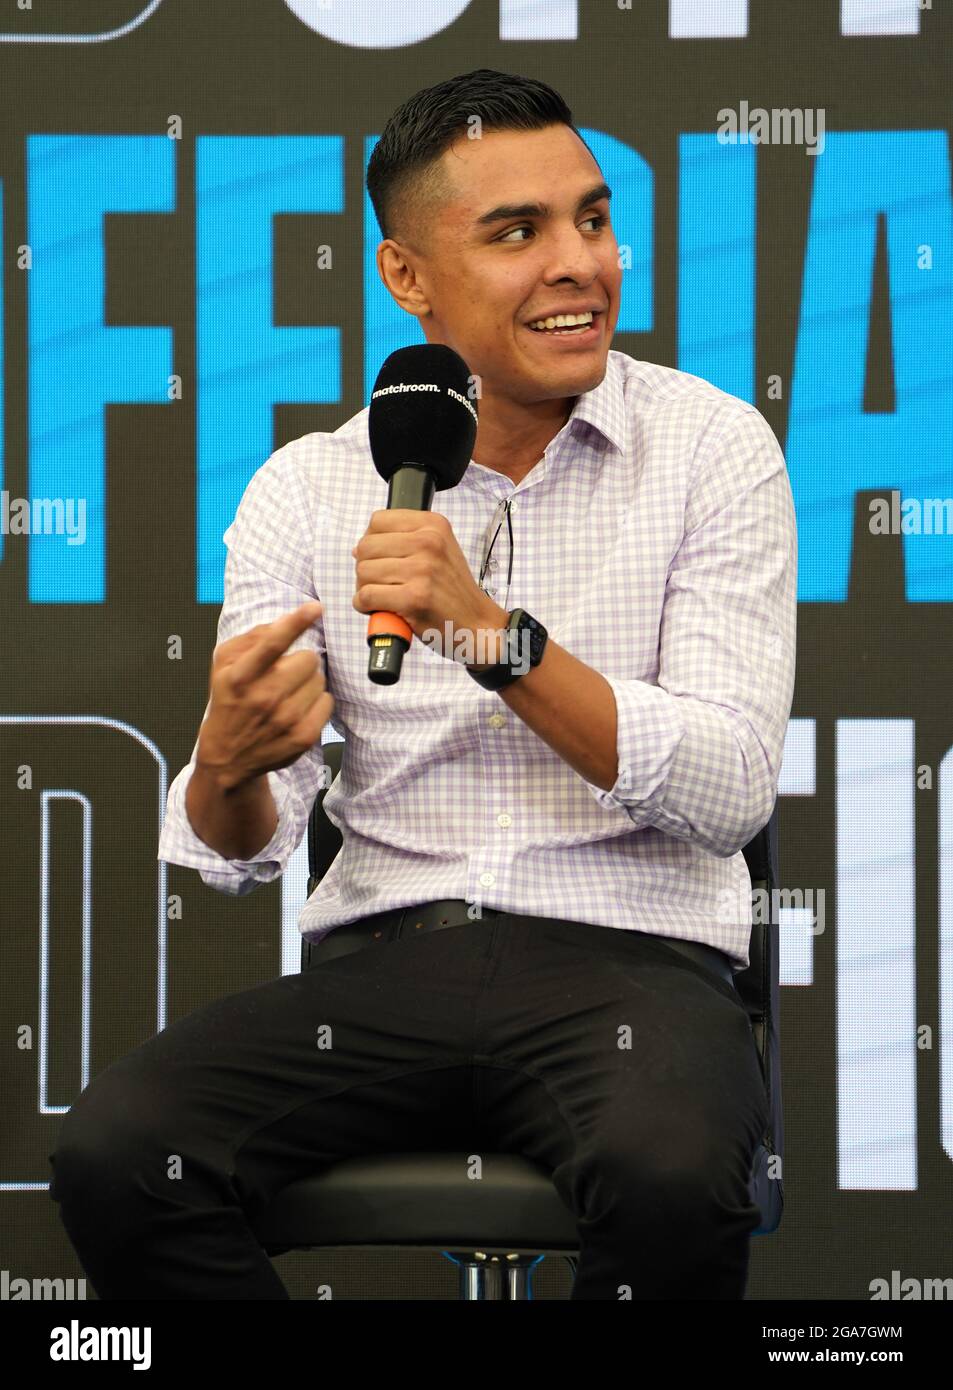 Adrian Granados während einer Pressekonferenz in Mascalls, Brentwood. Stockfoto